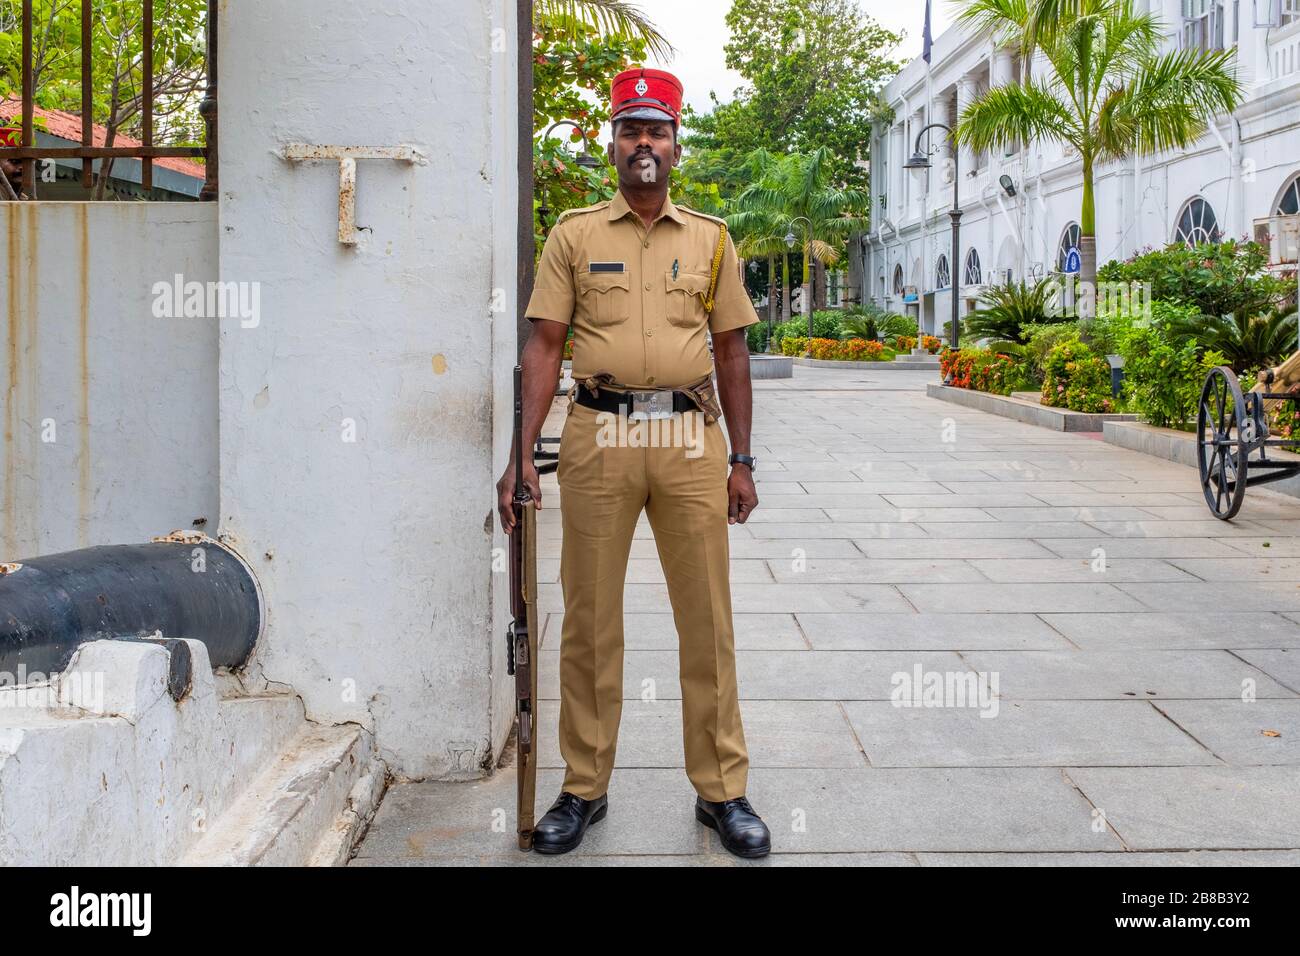 Pondicherry, Indien - 17. März 2018: Indischer Polizist als französischer Gendarme verkleidet, der die Kamera betrachtet Stockfoto